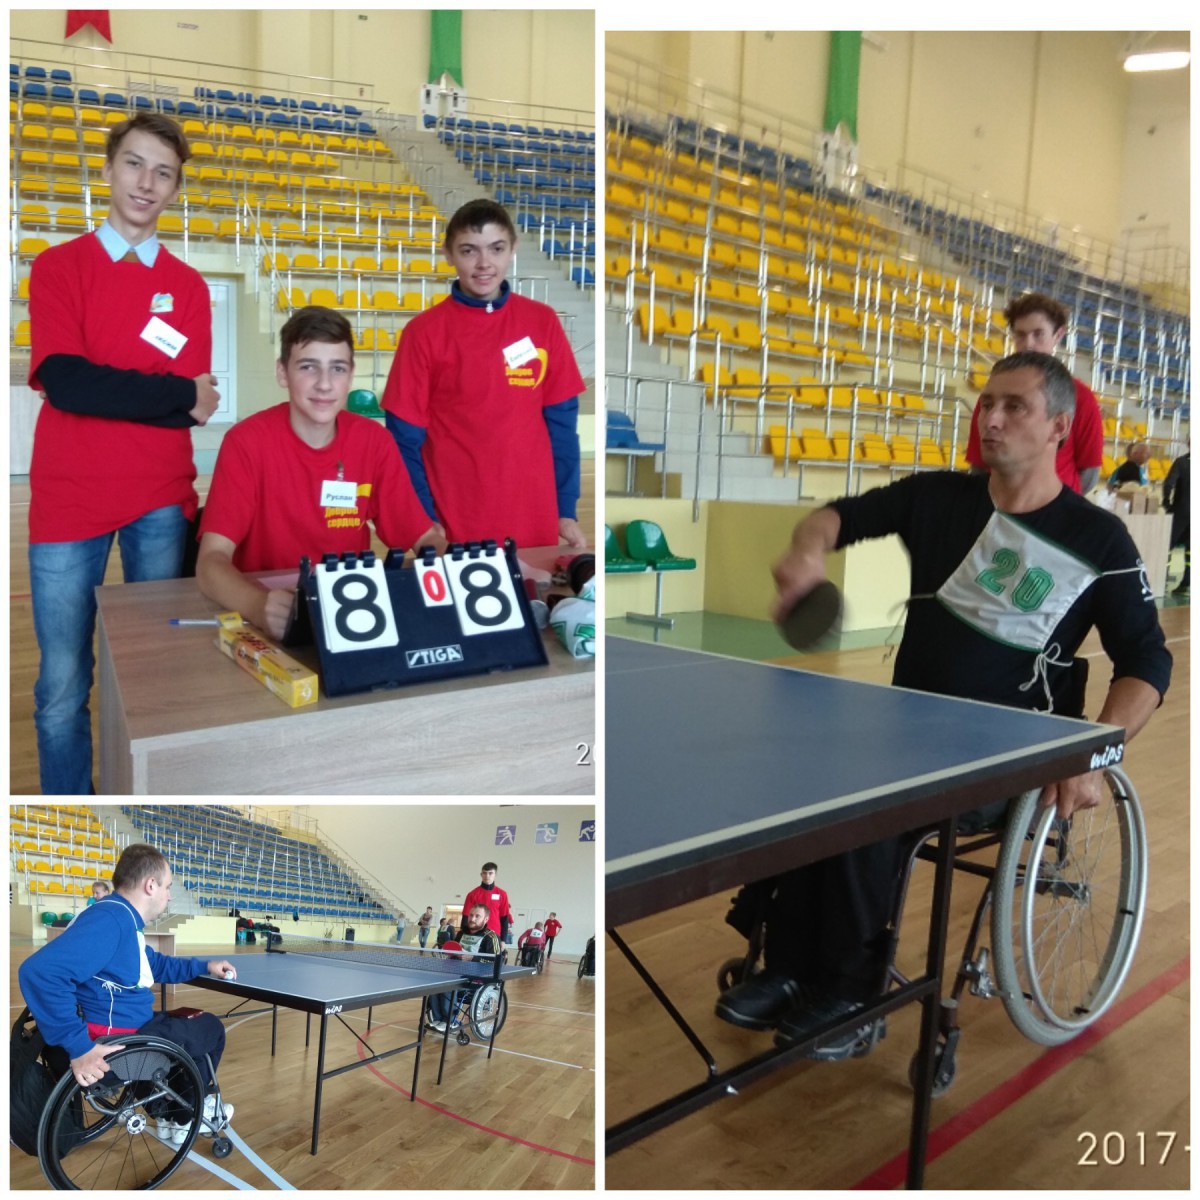 6 октября в физкультурно-оздоровительном центре г. Костюковичи состоялись I открытые спортивные соревнования среди инвалидов-колясочников.